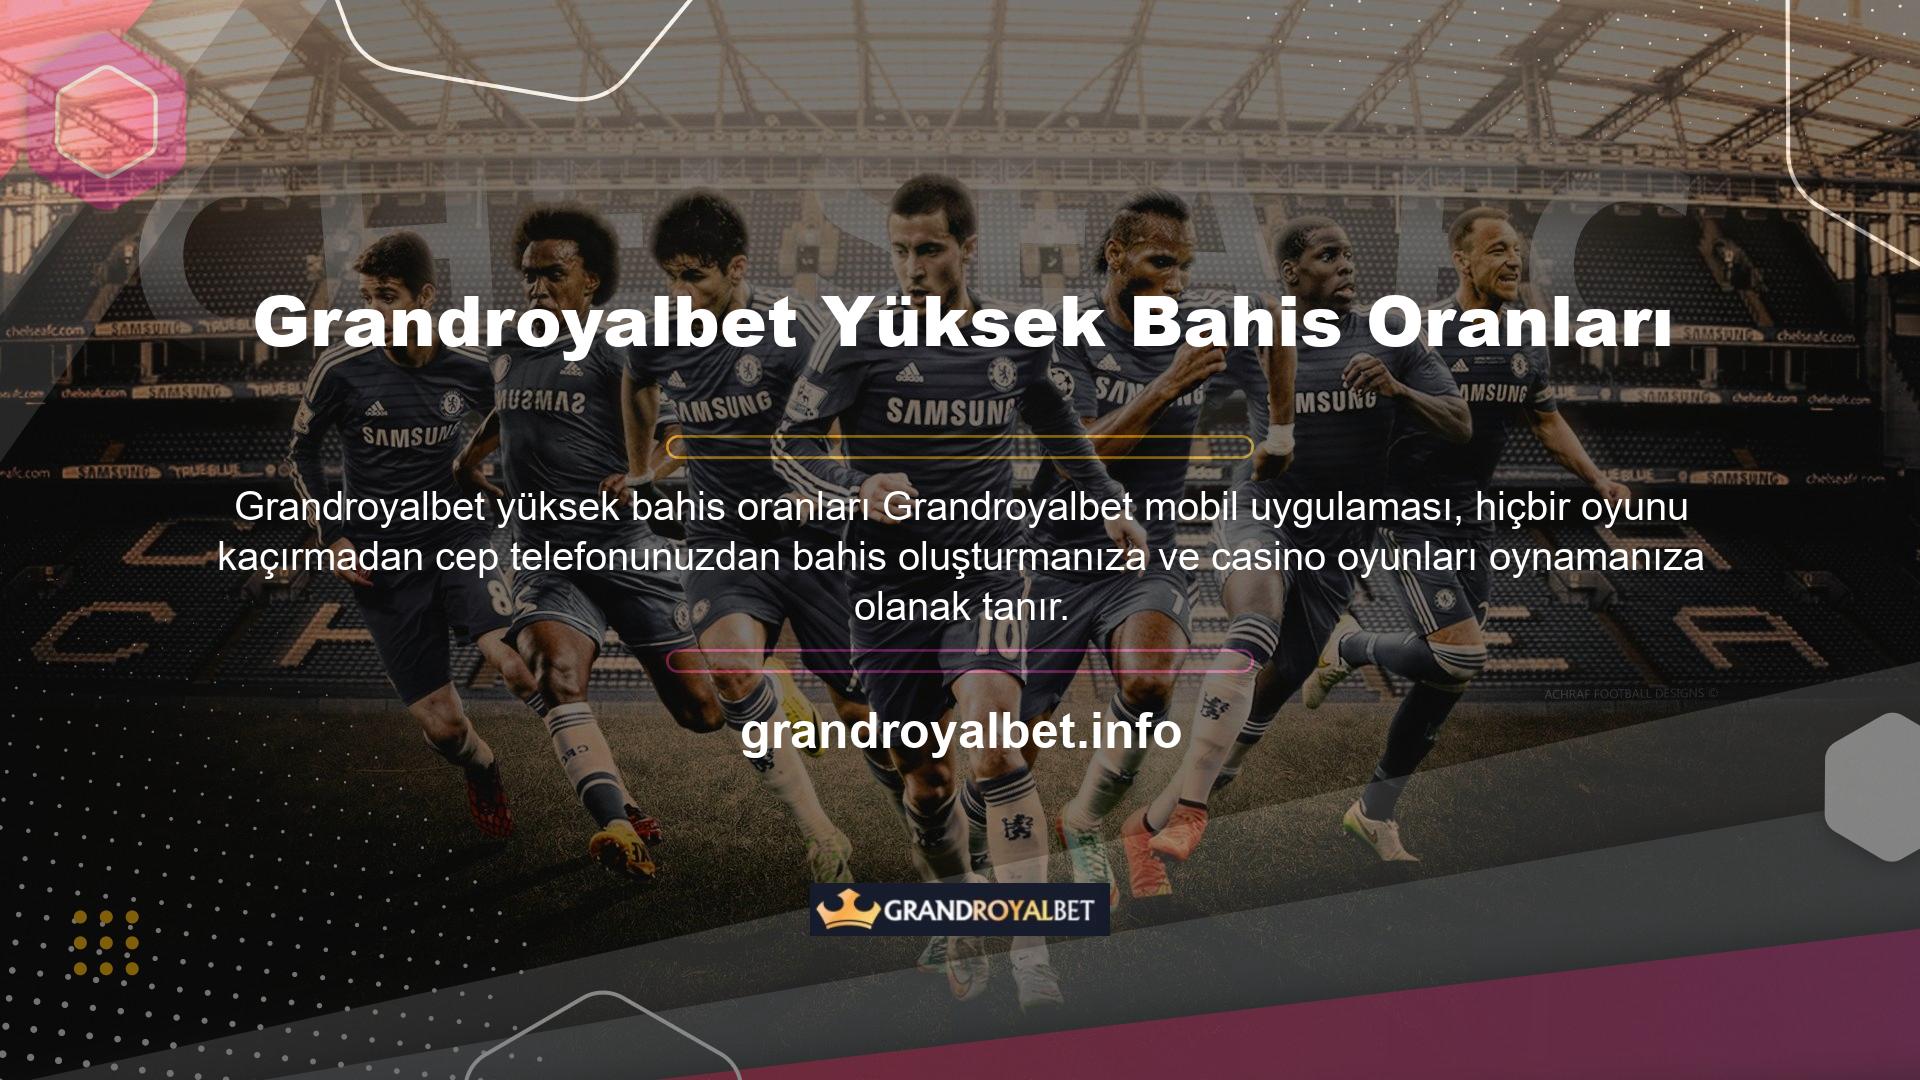 Grandroyalbet Yüksek OranlarGrandroyalbet Spor Bahisleri, genel spor bahislerindeki yüksek oranları ve Türkiye'nin çok üzerinde bonus uygulamalarıyla Türk bahisçilerinin kalbini kazandı